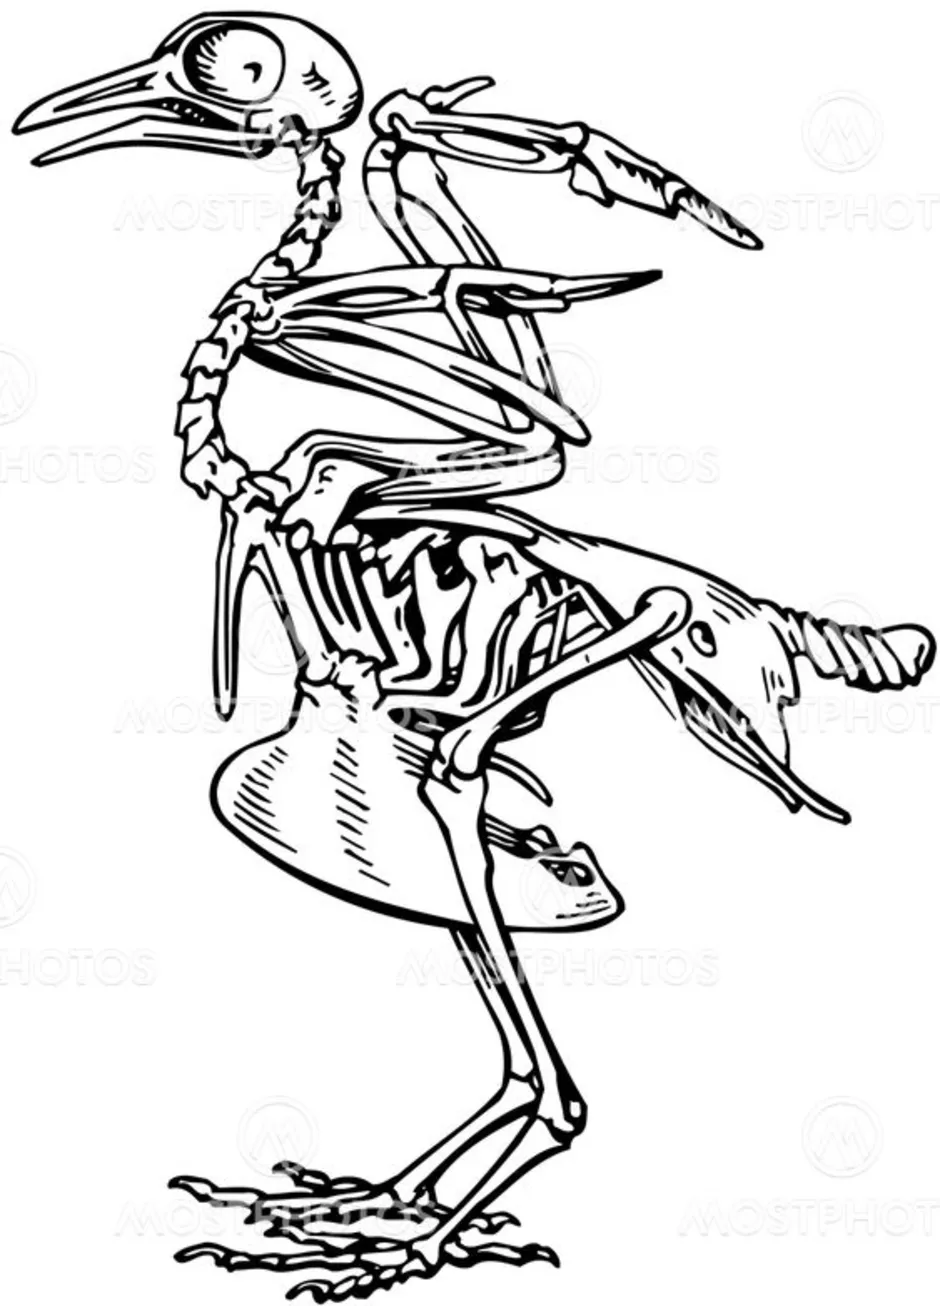 На рисунке изображен скелет птицы. Скелет голубя. Скелет сизого голубя. Скелет птицы без подписей. Скелет голубя рисунок.